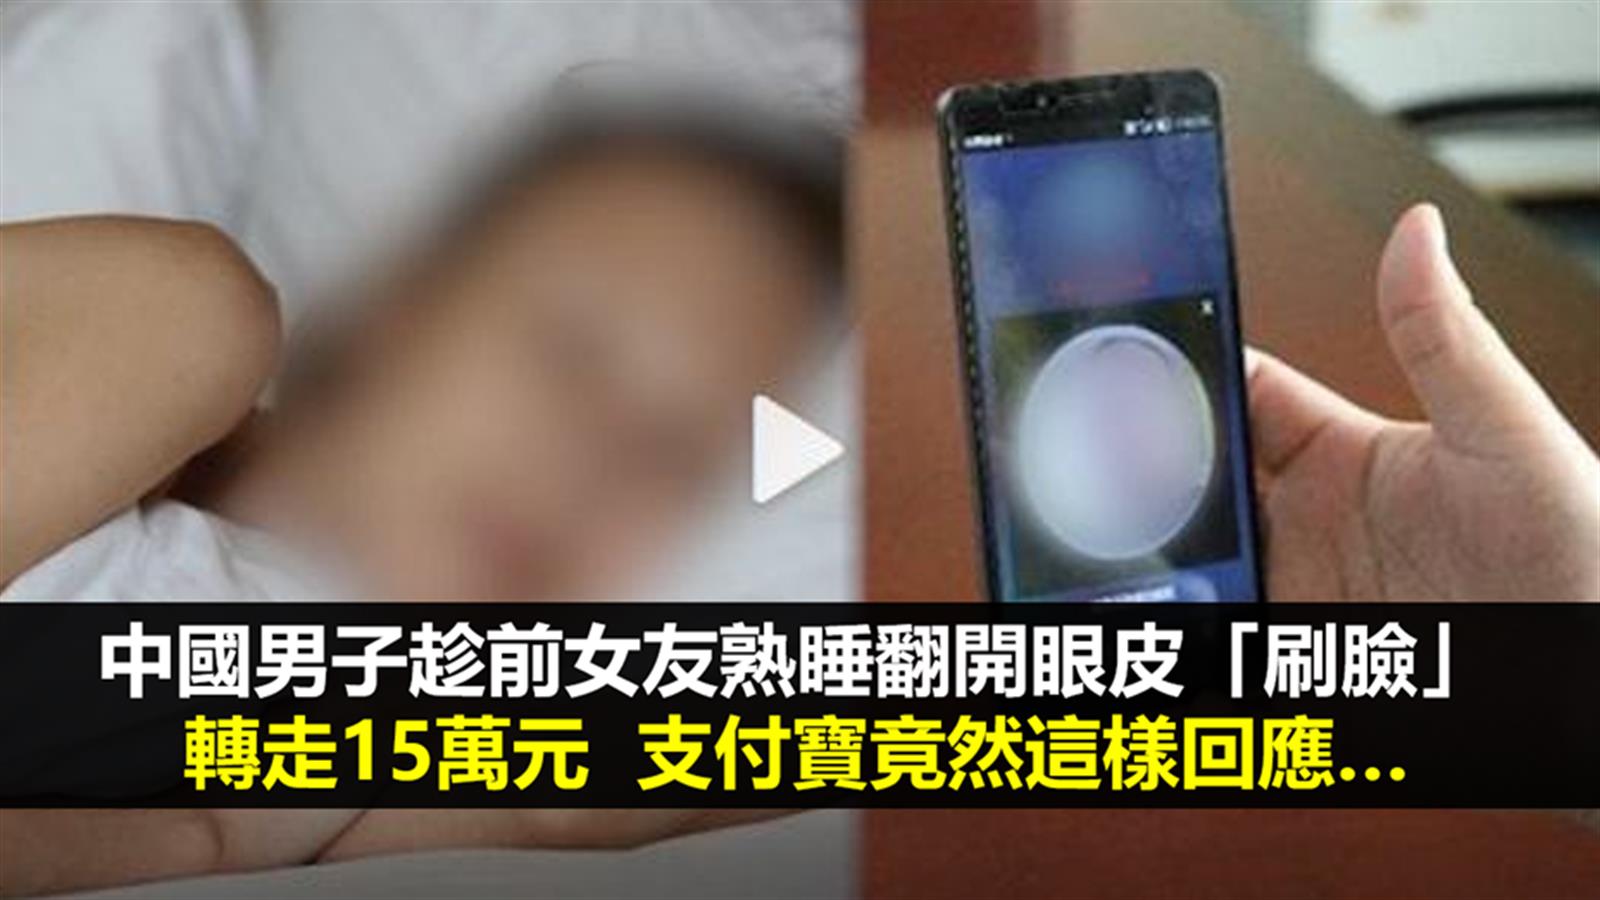 中國男子趁前女友熟睡翻開眼皮「刷臉」轉走15萬元  支付寶竟然這樣回應…